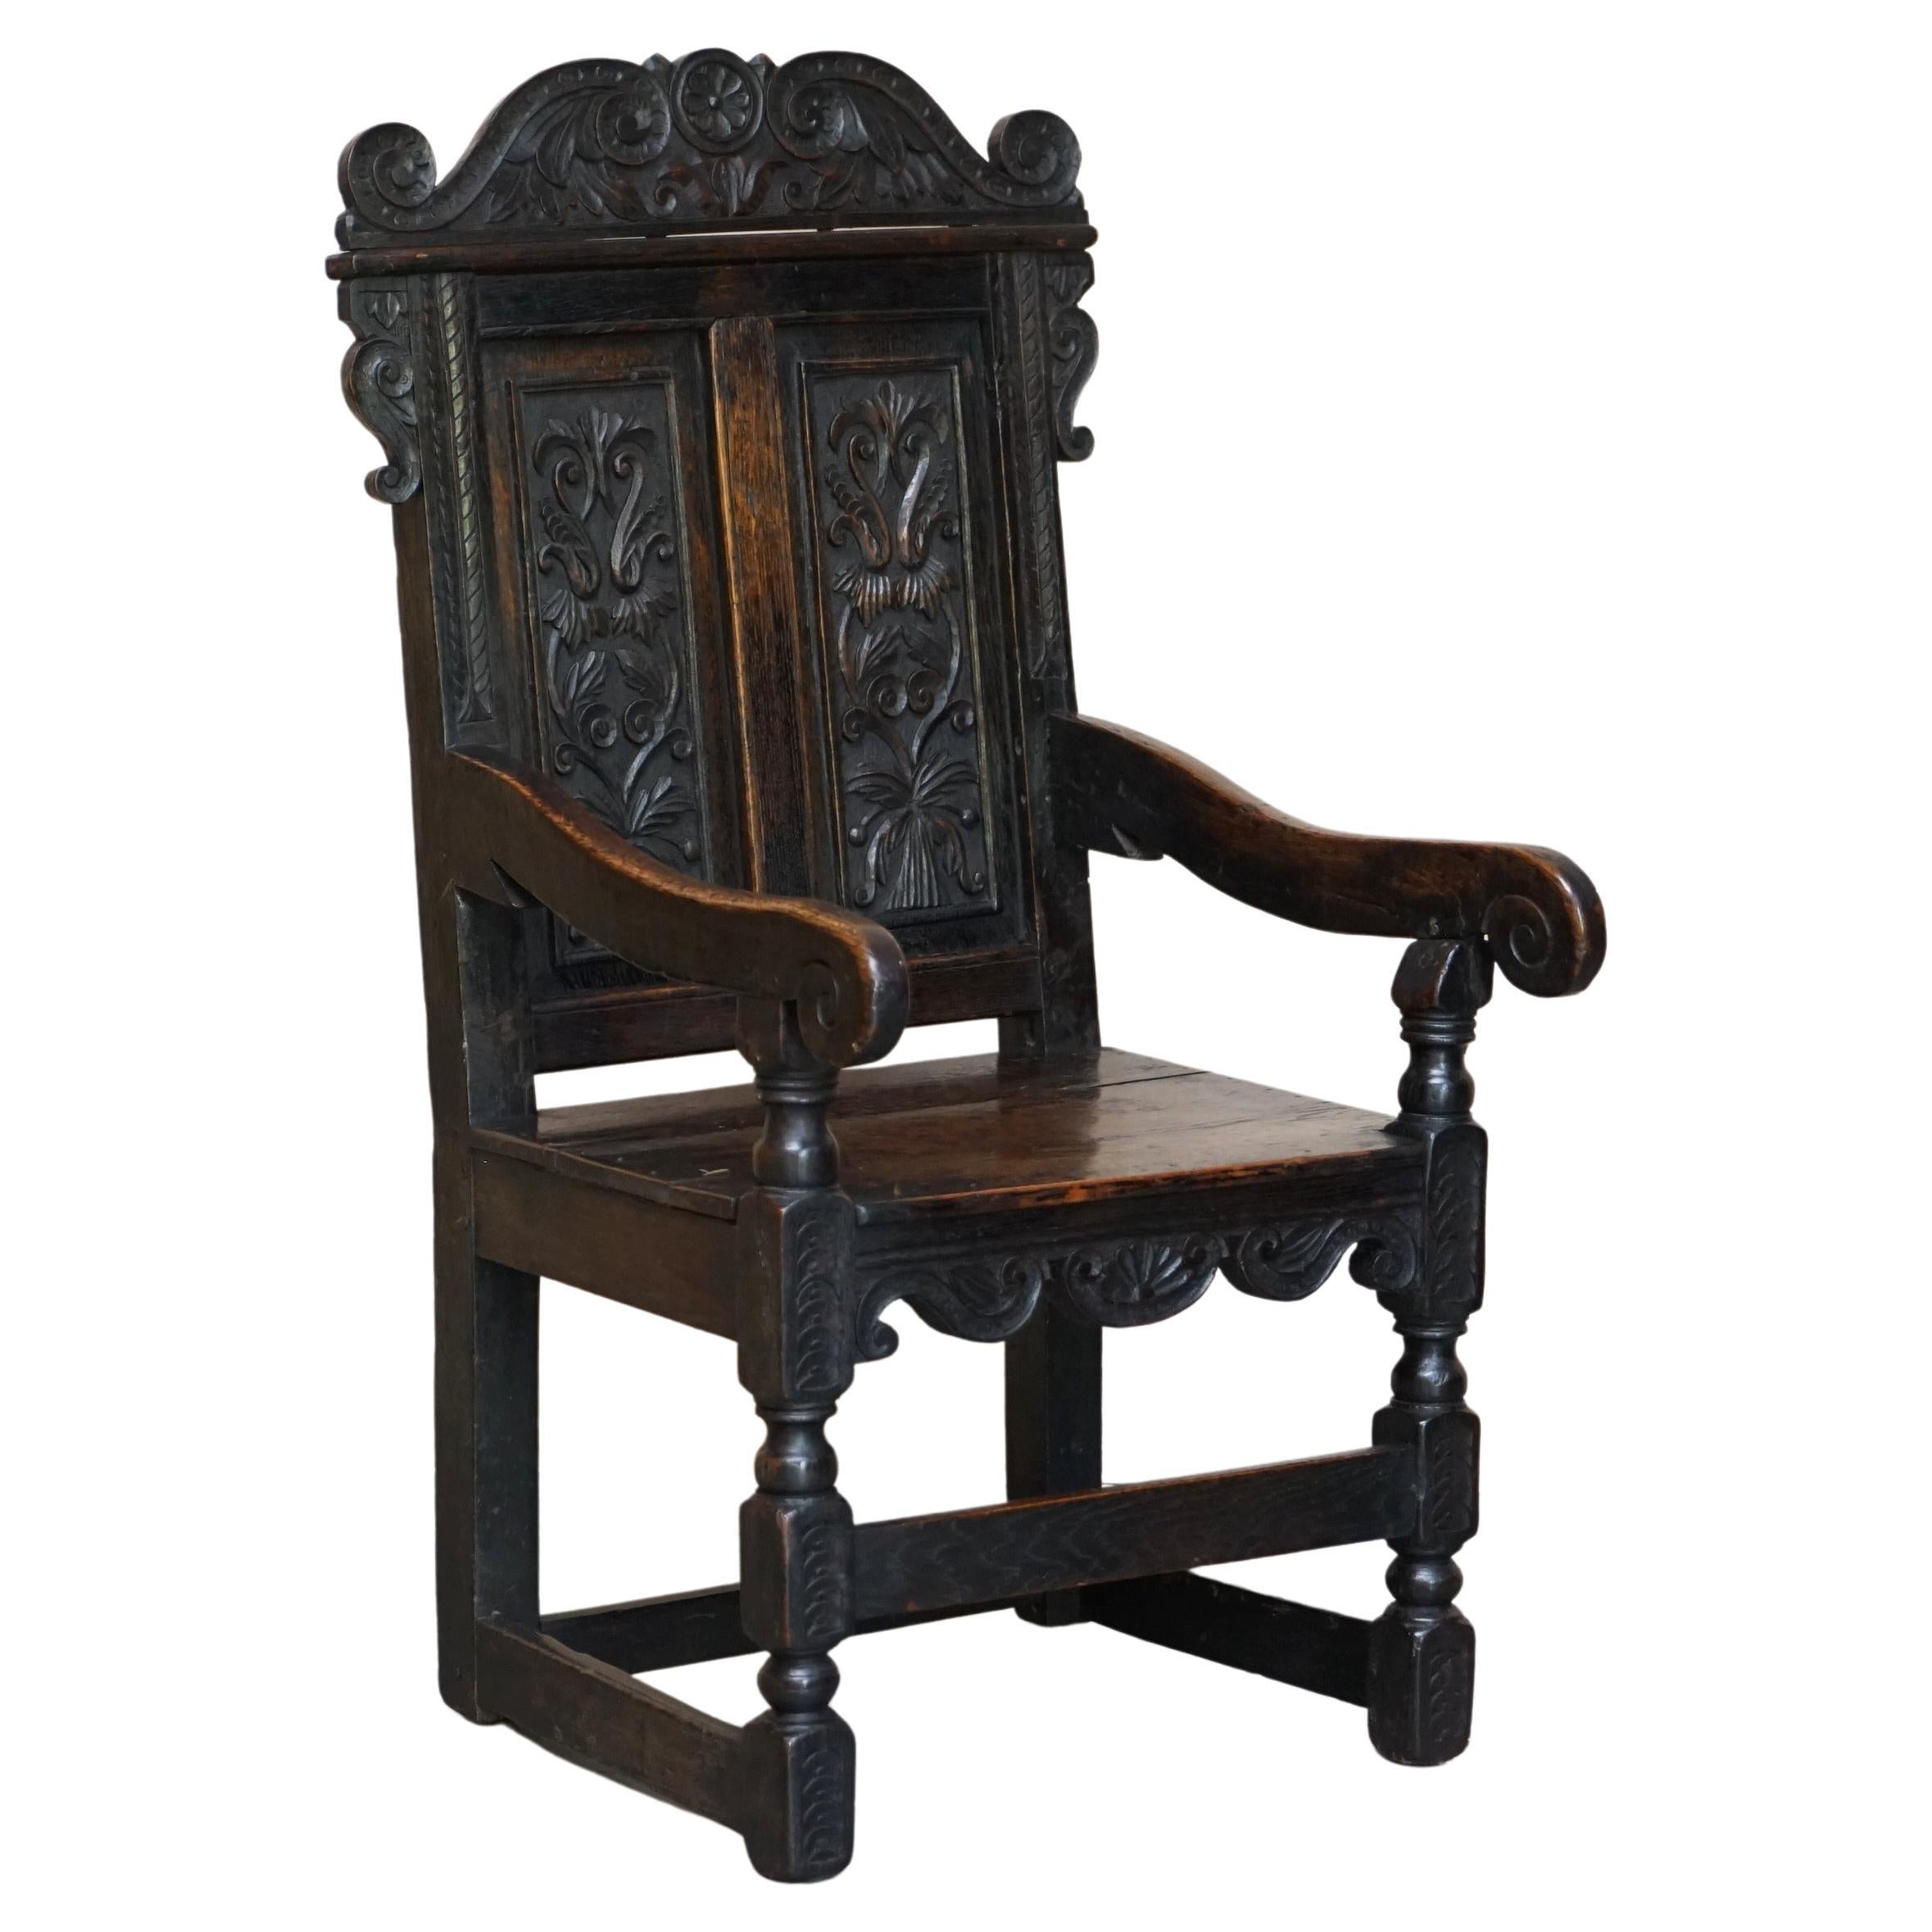 Original Wainscot-Sessel aus Eiche, Nordengland, original, 18. Jahrhundert, rar